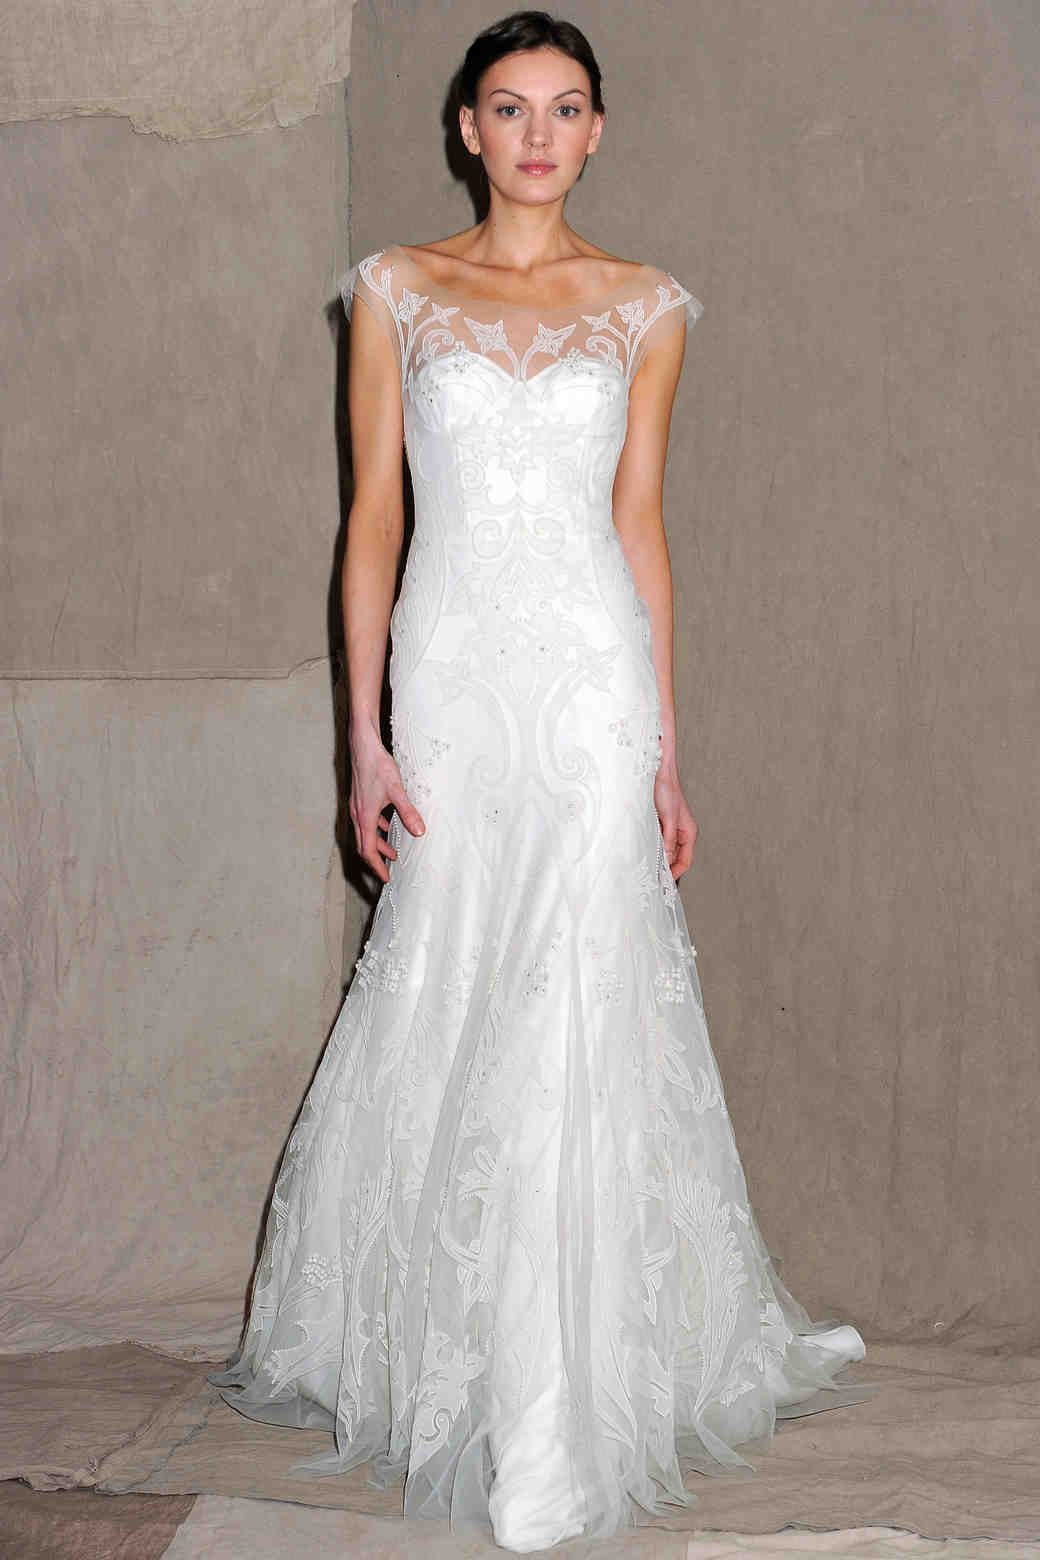 A-Line Wedding Dresses from Spring 2013 Bridal Fashion Week | Martha ...